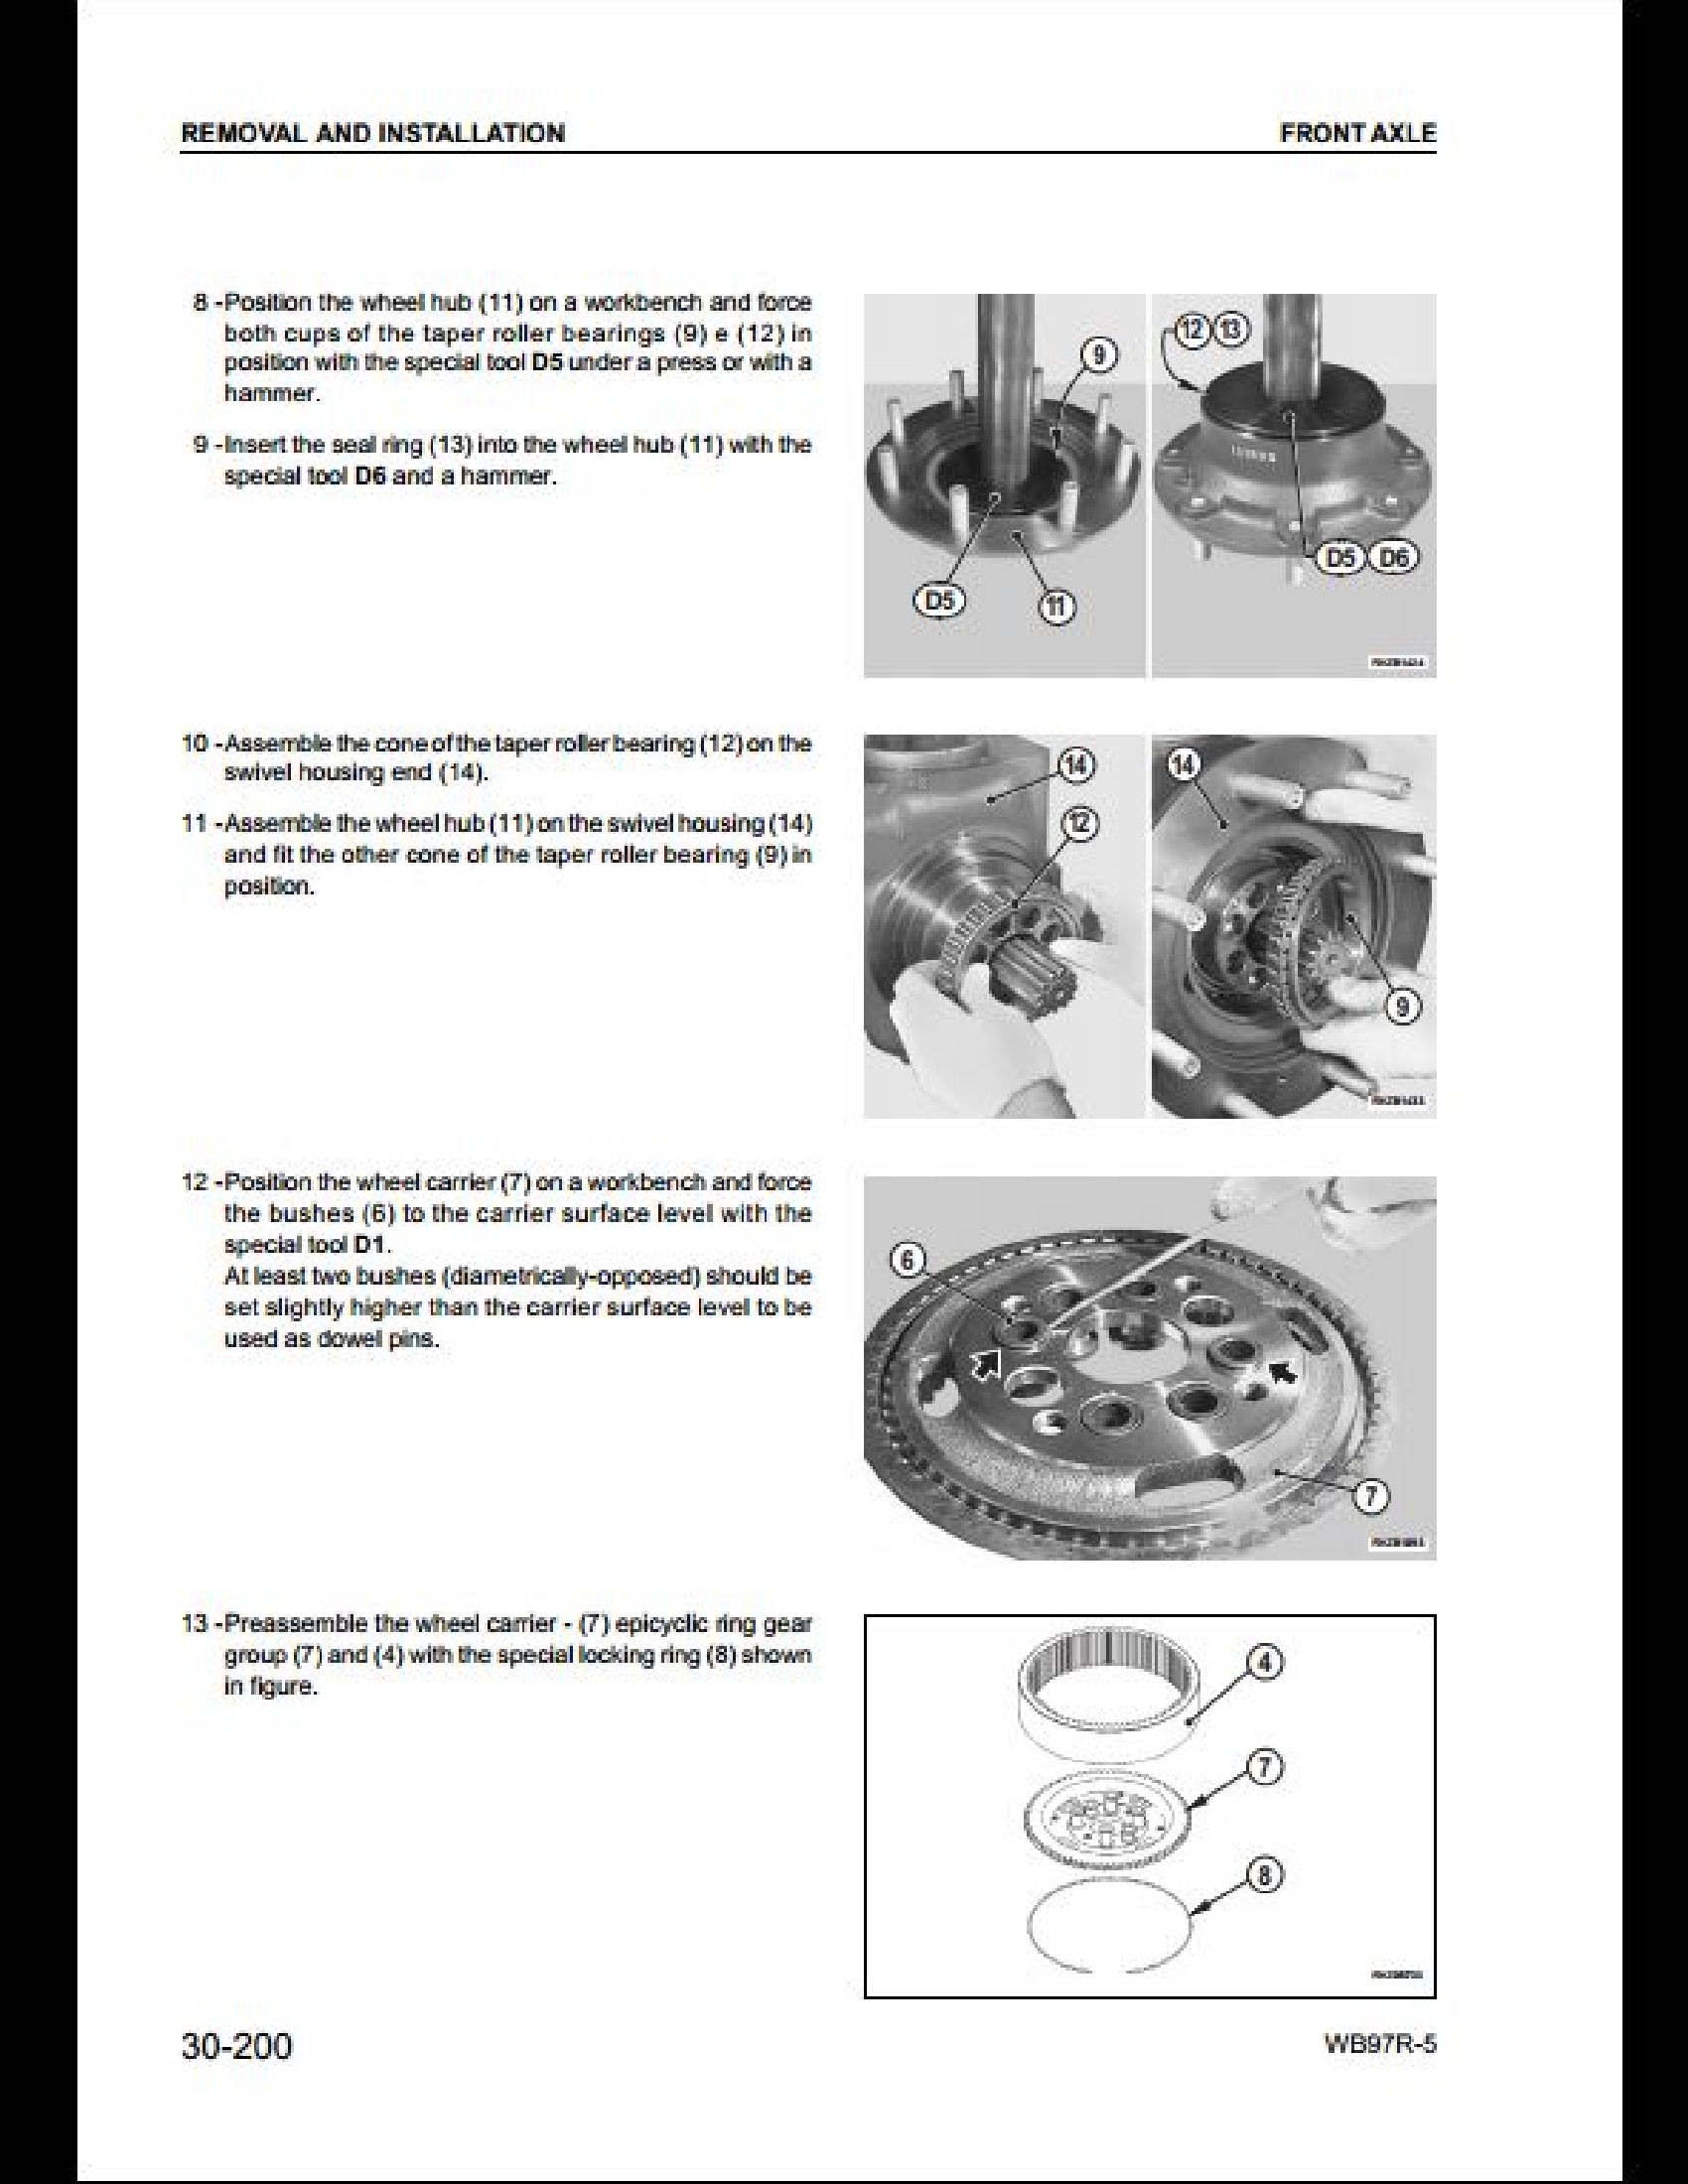 KOMATSU WB97R-5 Backhoe Loader manual